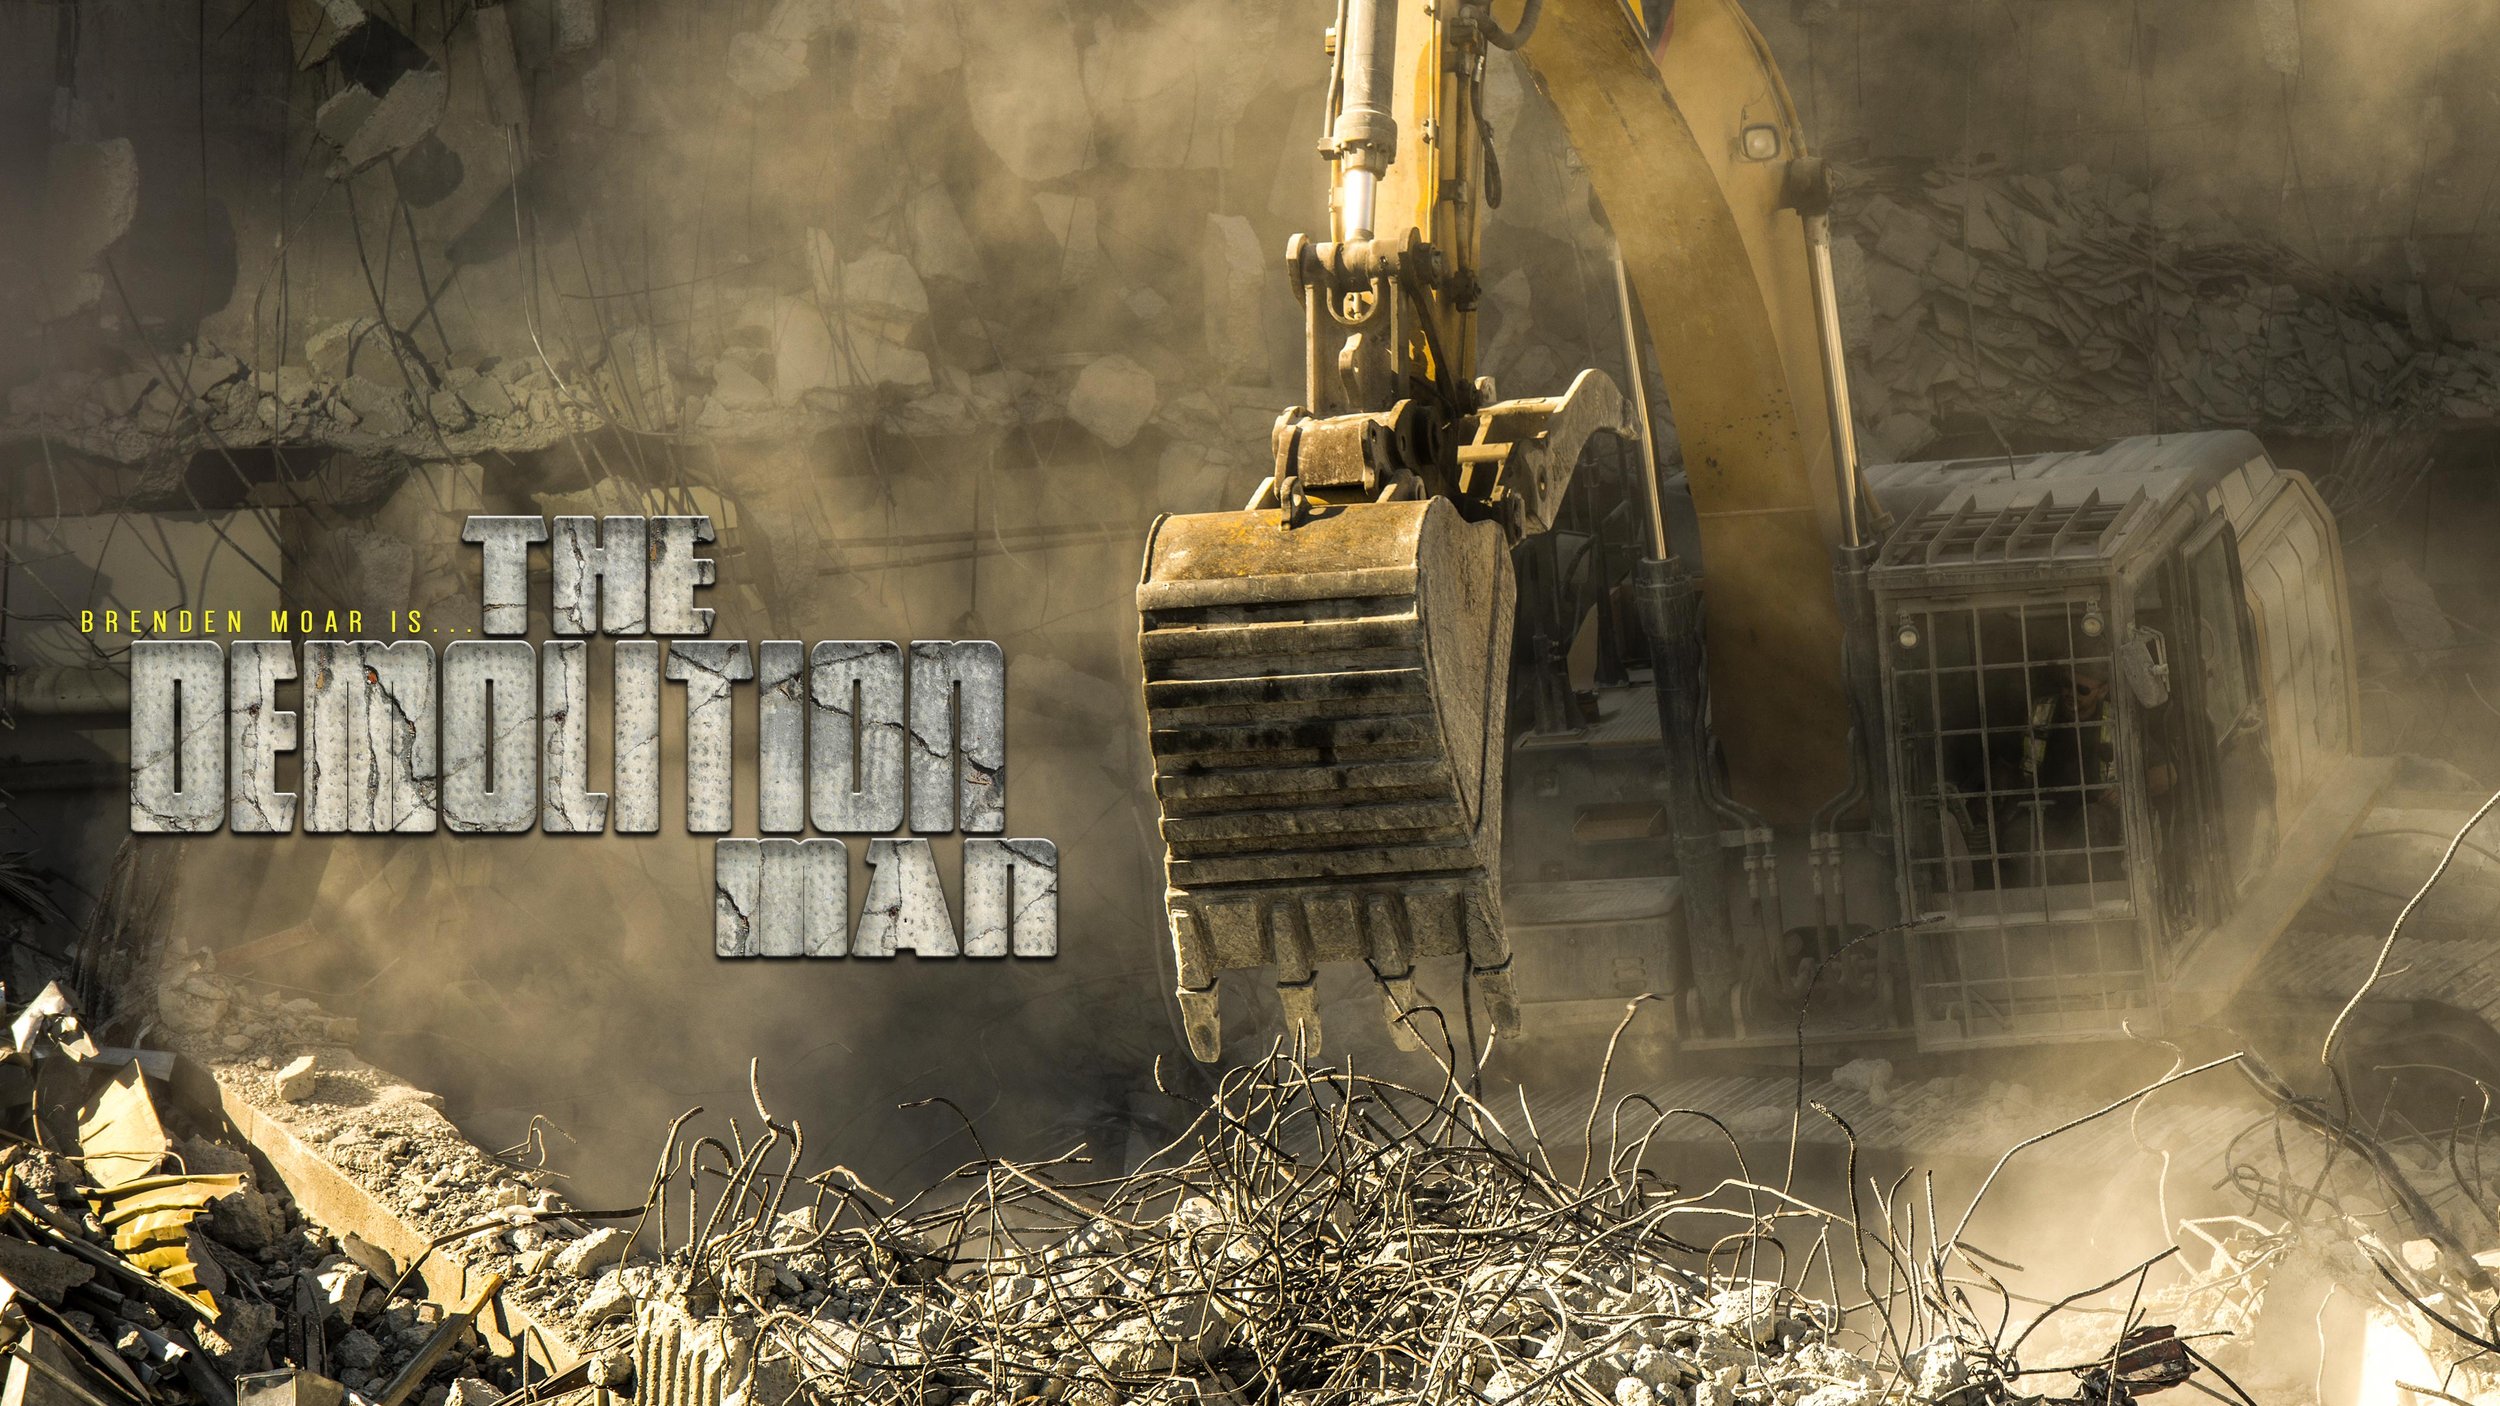 The_Demolition_Man_landscape.jpg